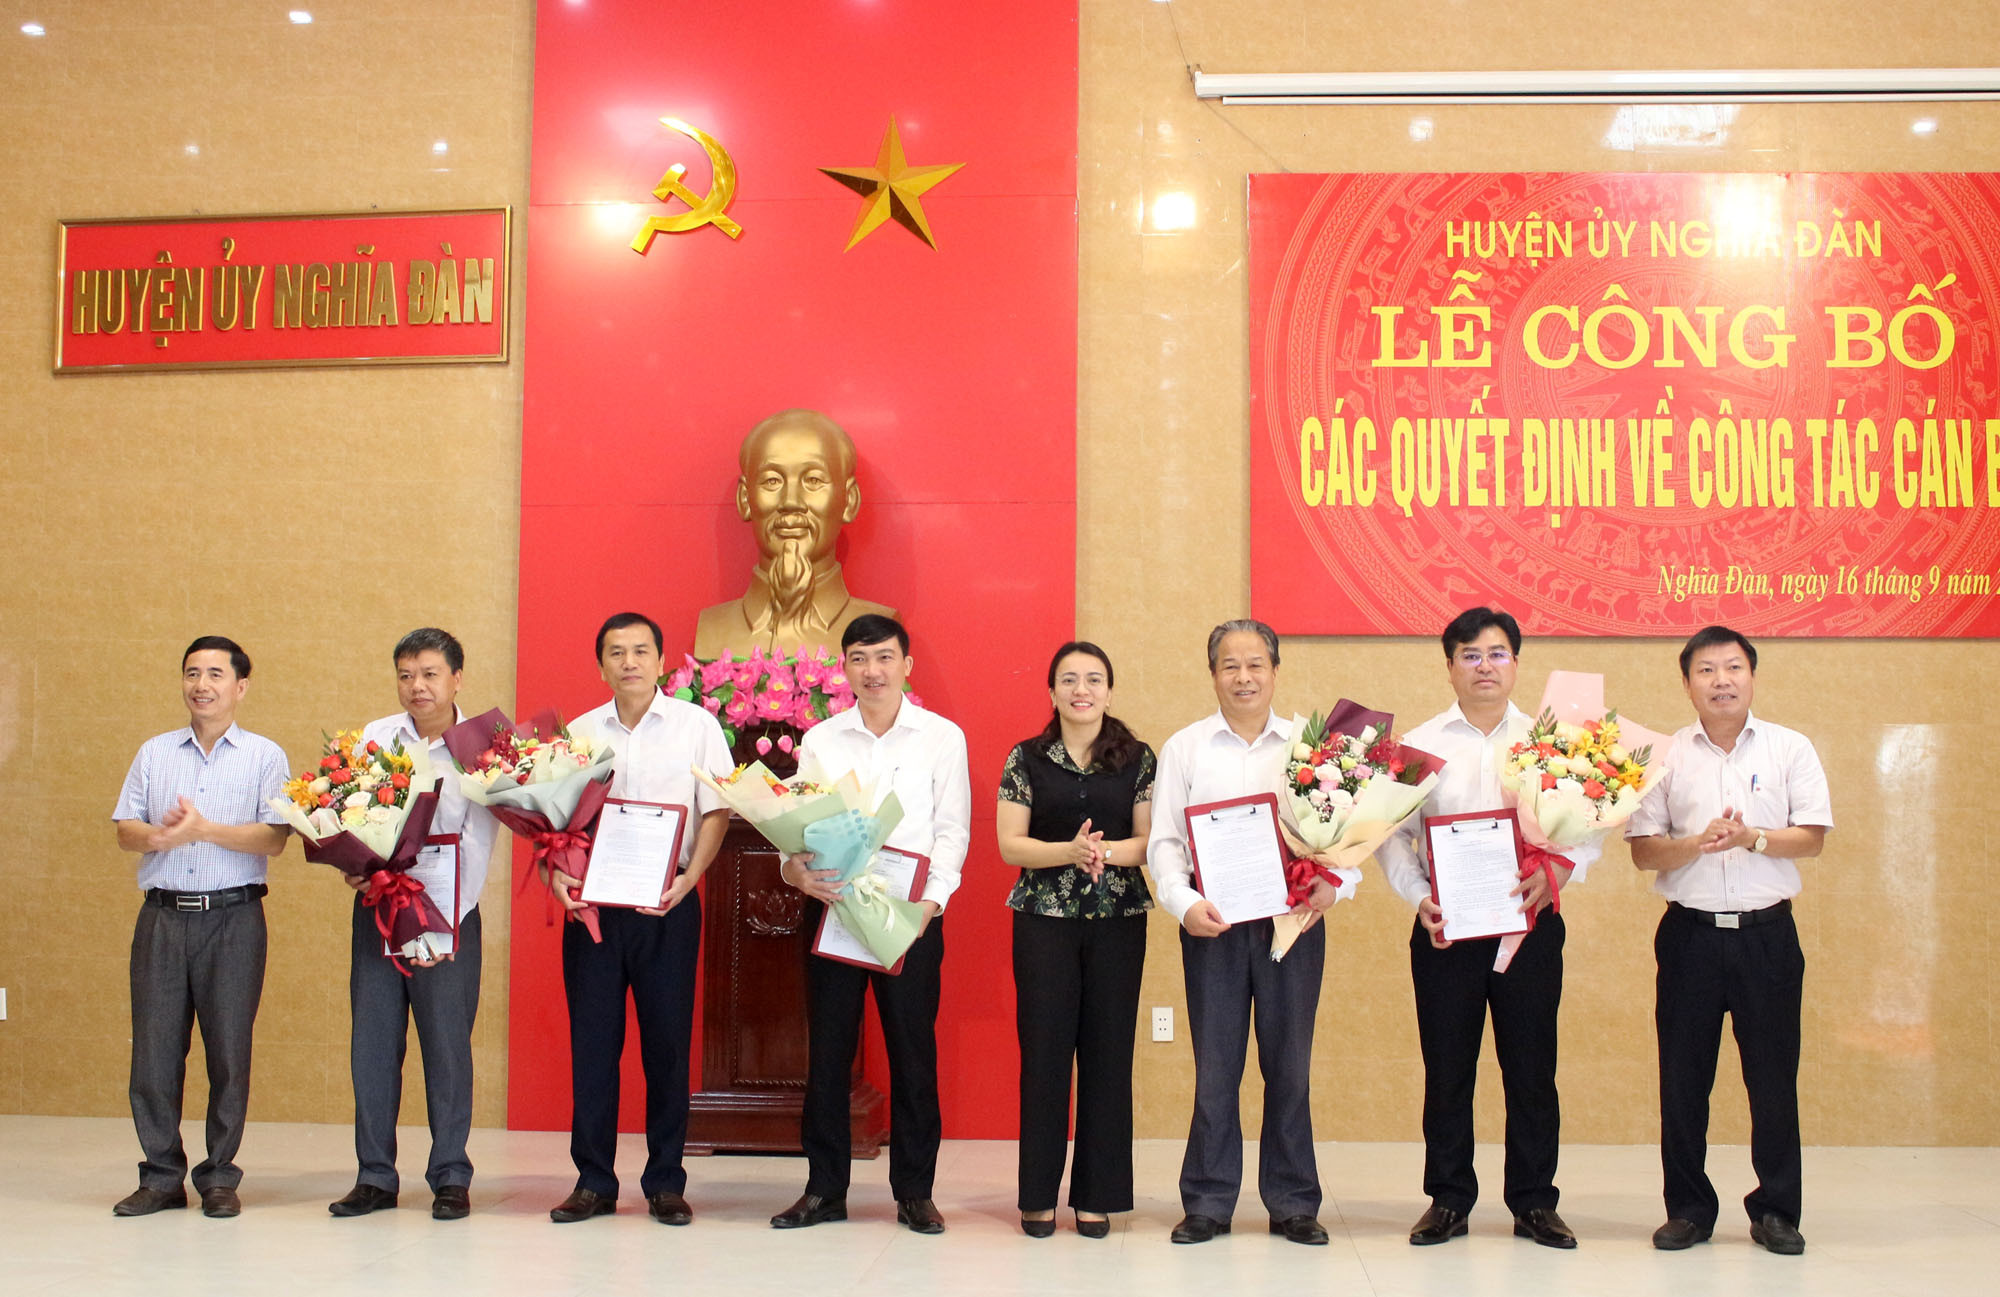 Thường trực Huyện ủy Nghĩa Đàn trao quyết định và tặng hoa chúc mừng các đồng chí được bổ nhiệm.